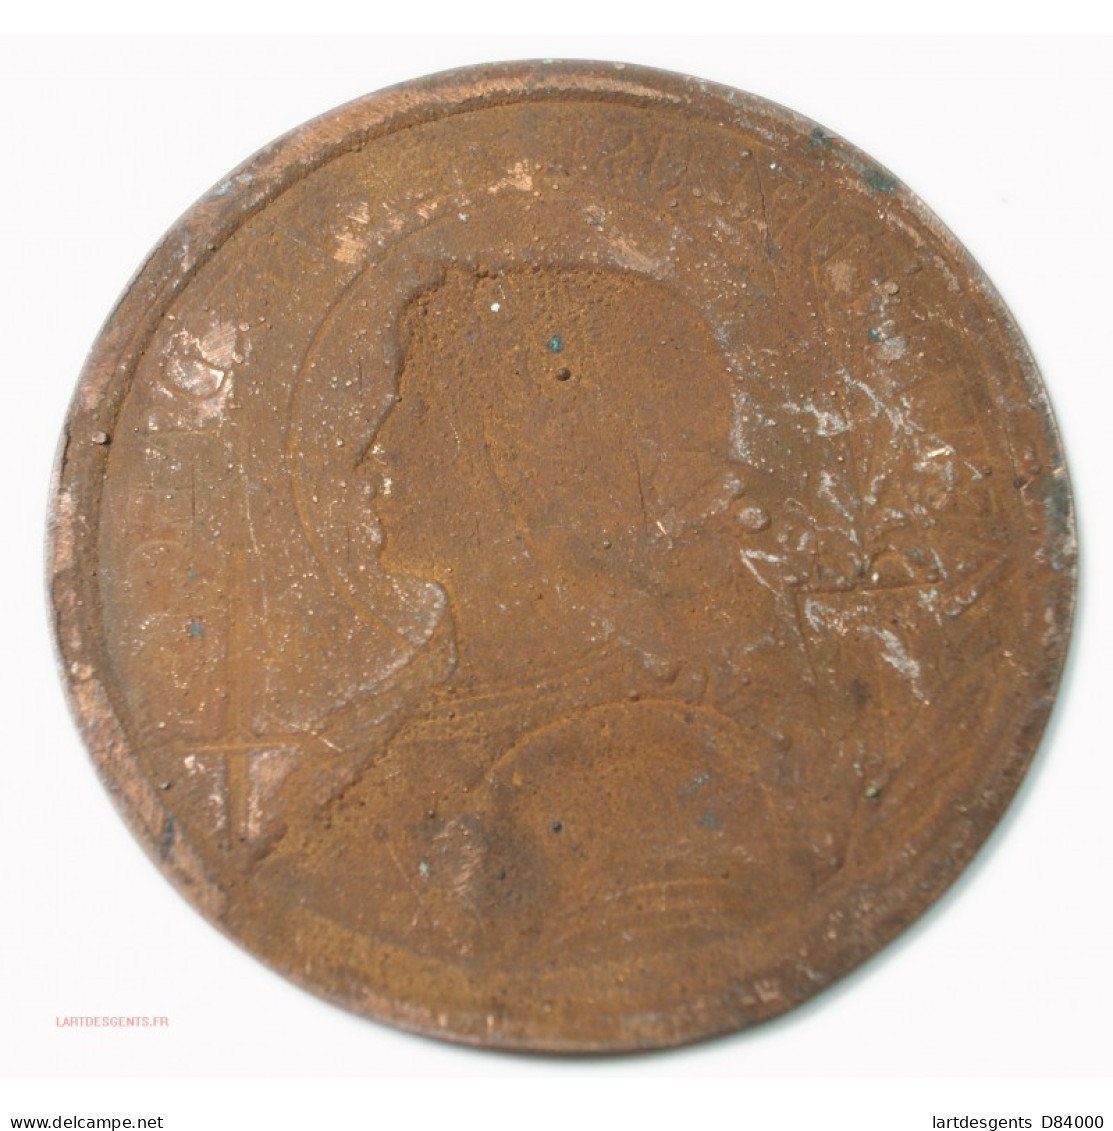 Rare Médaille Uniface Bienheureuse Jeanne D'Arc 1412-1431 Par Paul DORIZE - Monarchia / Nobiltà